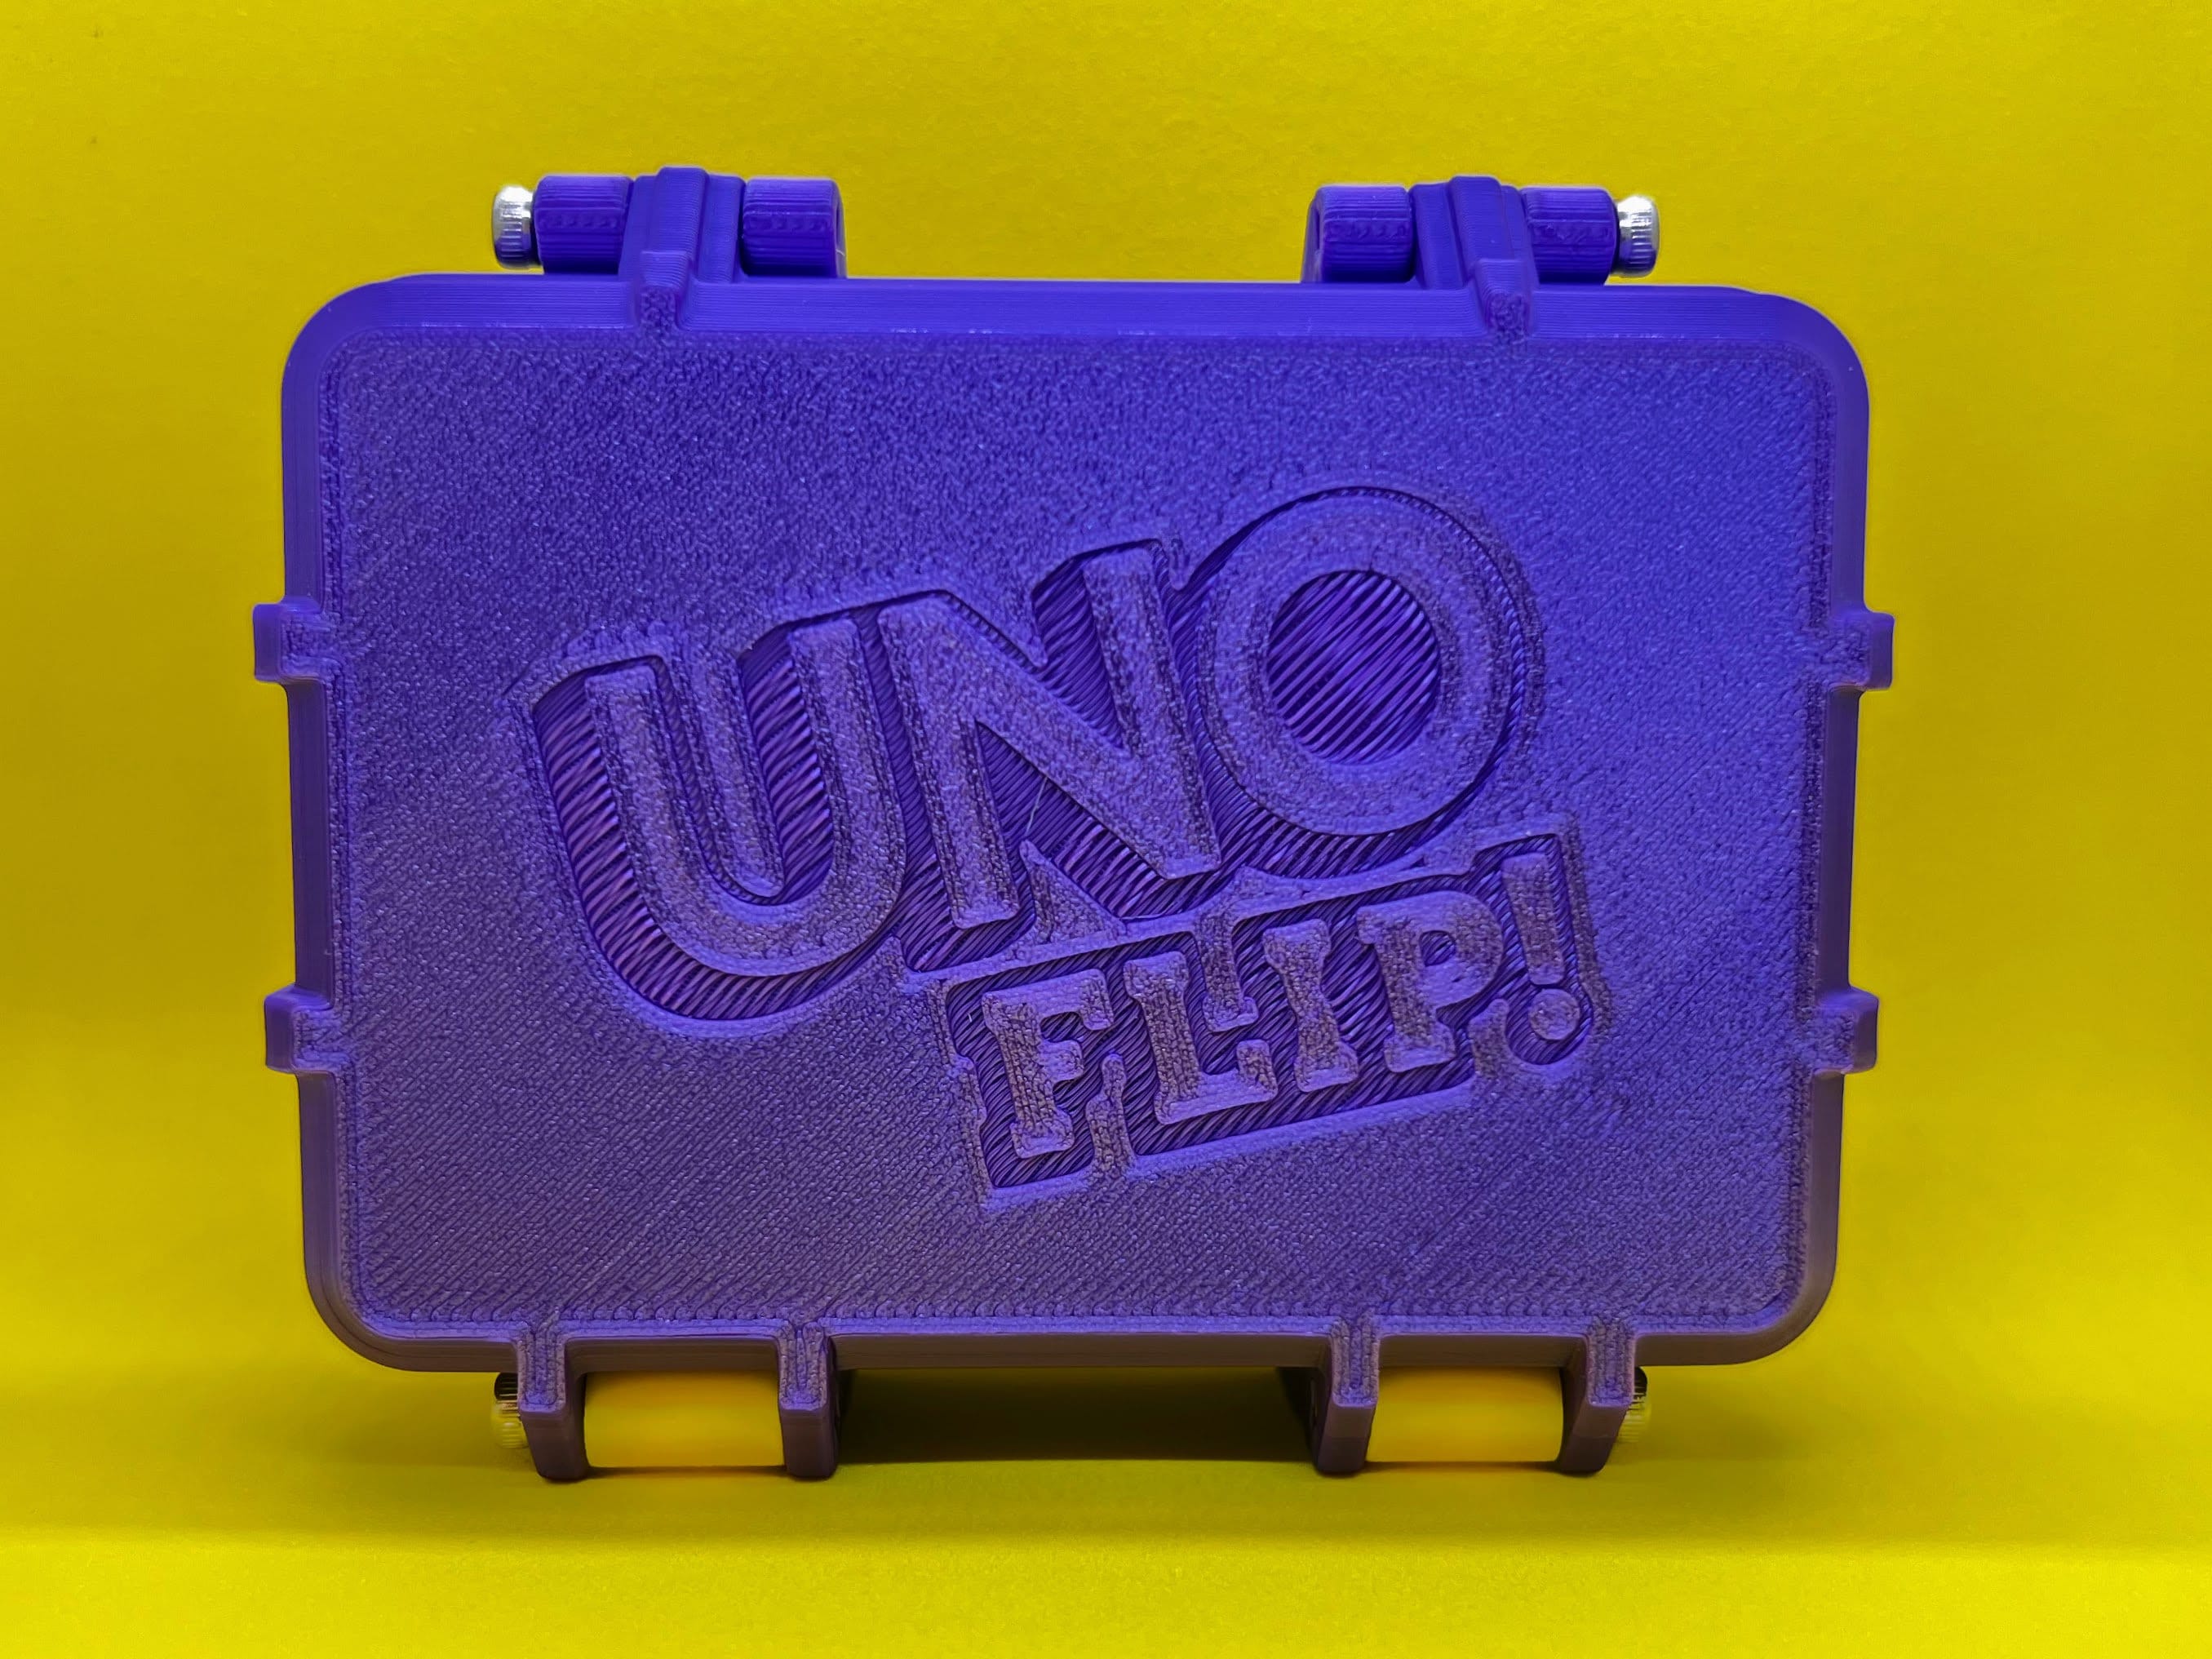 Fingerhut - UNO Flip Game with Tin Case